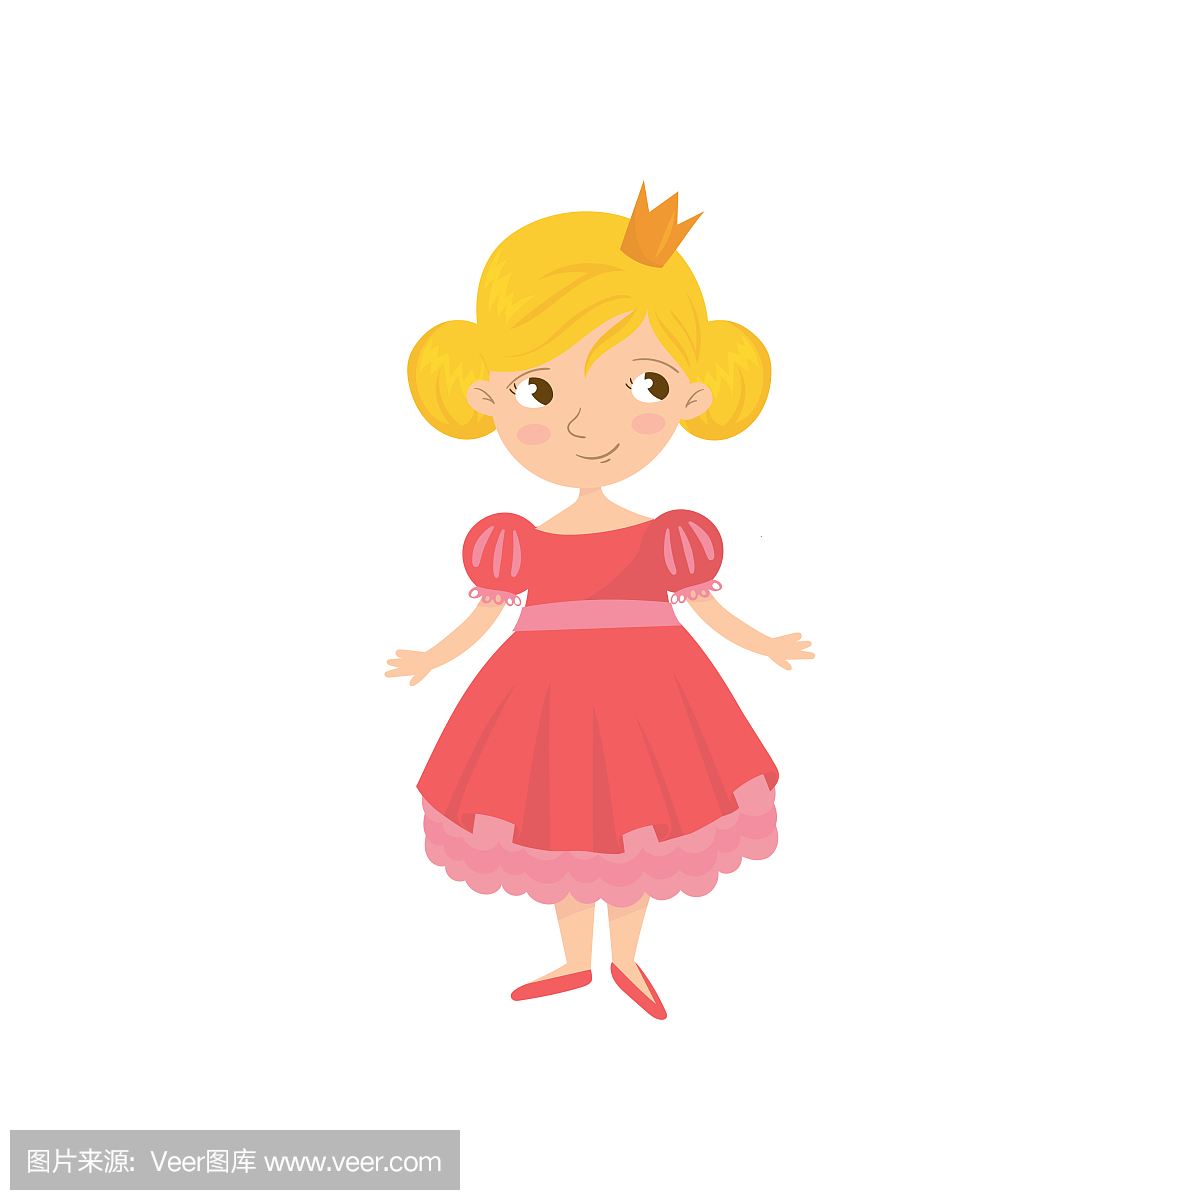 可爱的童话故事公主在粉红色的裙子和头上的金